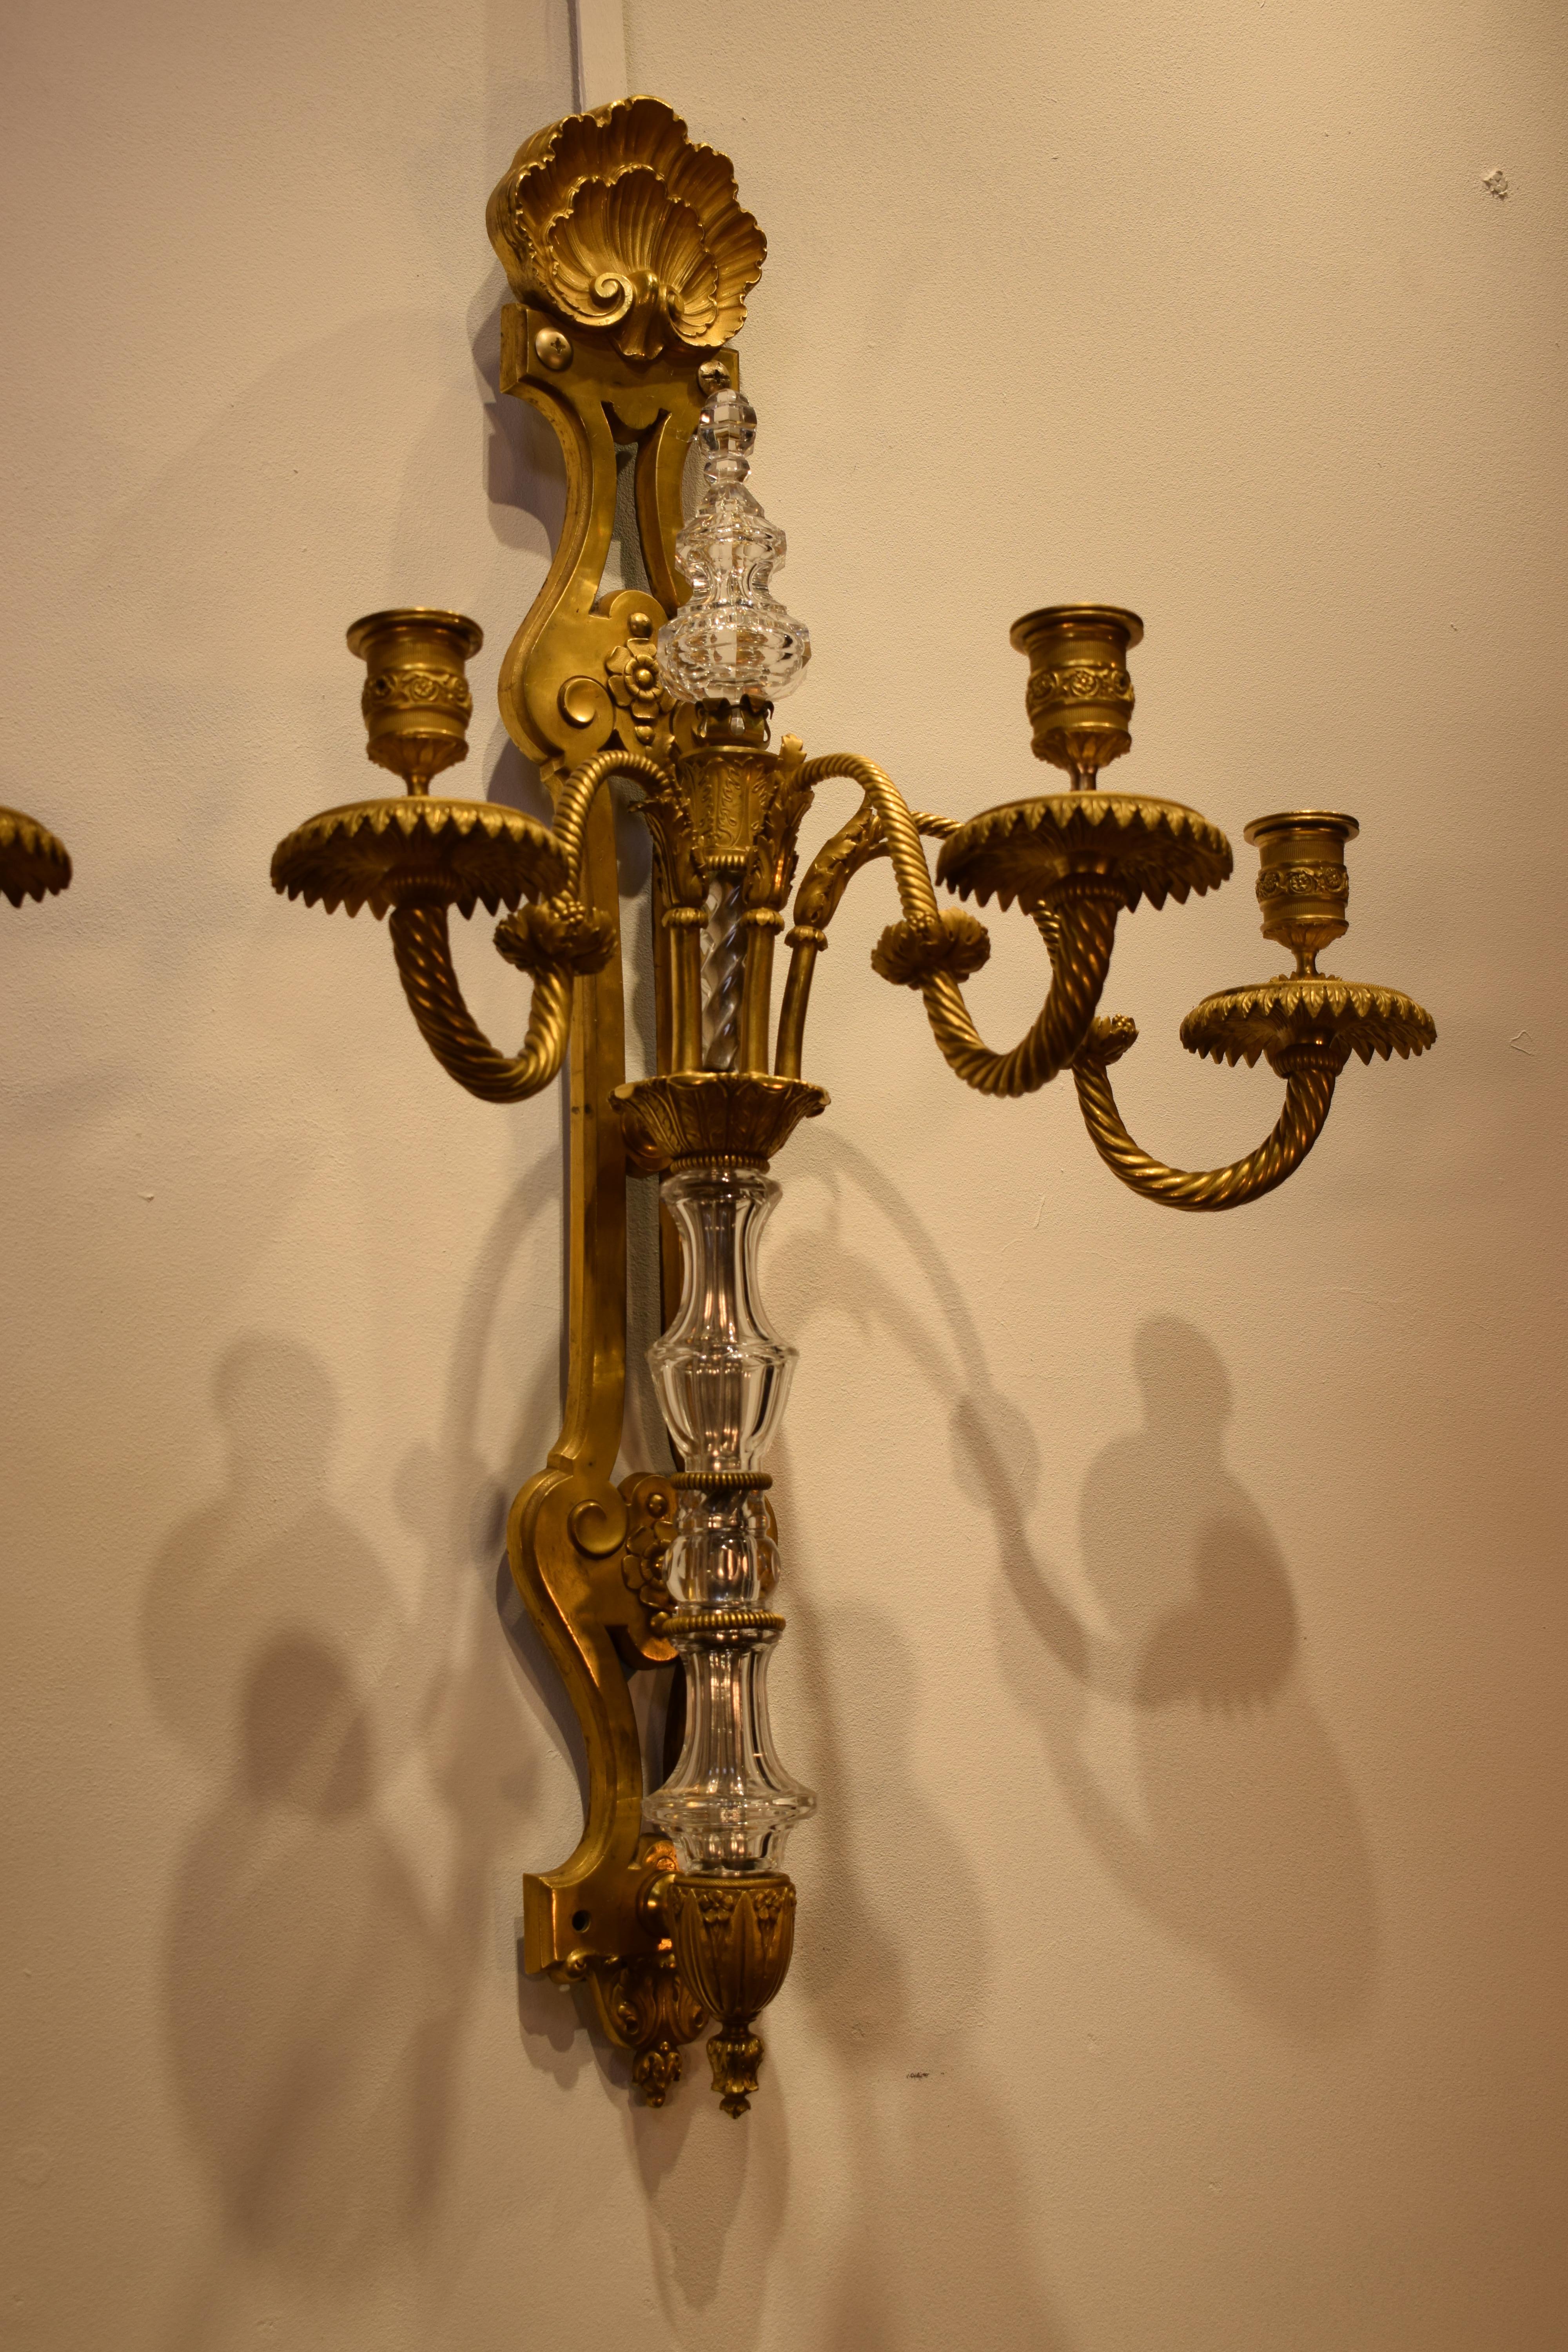 Ein prächtiges Paar Wandleuchter aus vergoldeter Bronze im Louis-XVI-Stil. Der Körper ist mit handgeschliffenen Kristallteilen und einer Pyramide versehen. Eine exquisite Muschel obendrauf. Jeweils drei Lichter. Frankreich, um 1890. 
Abmessungen: